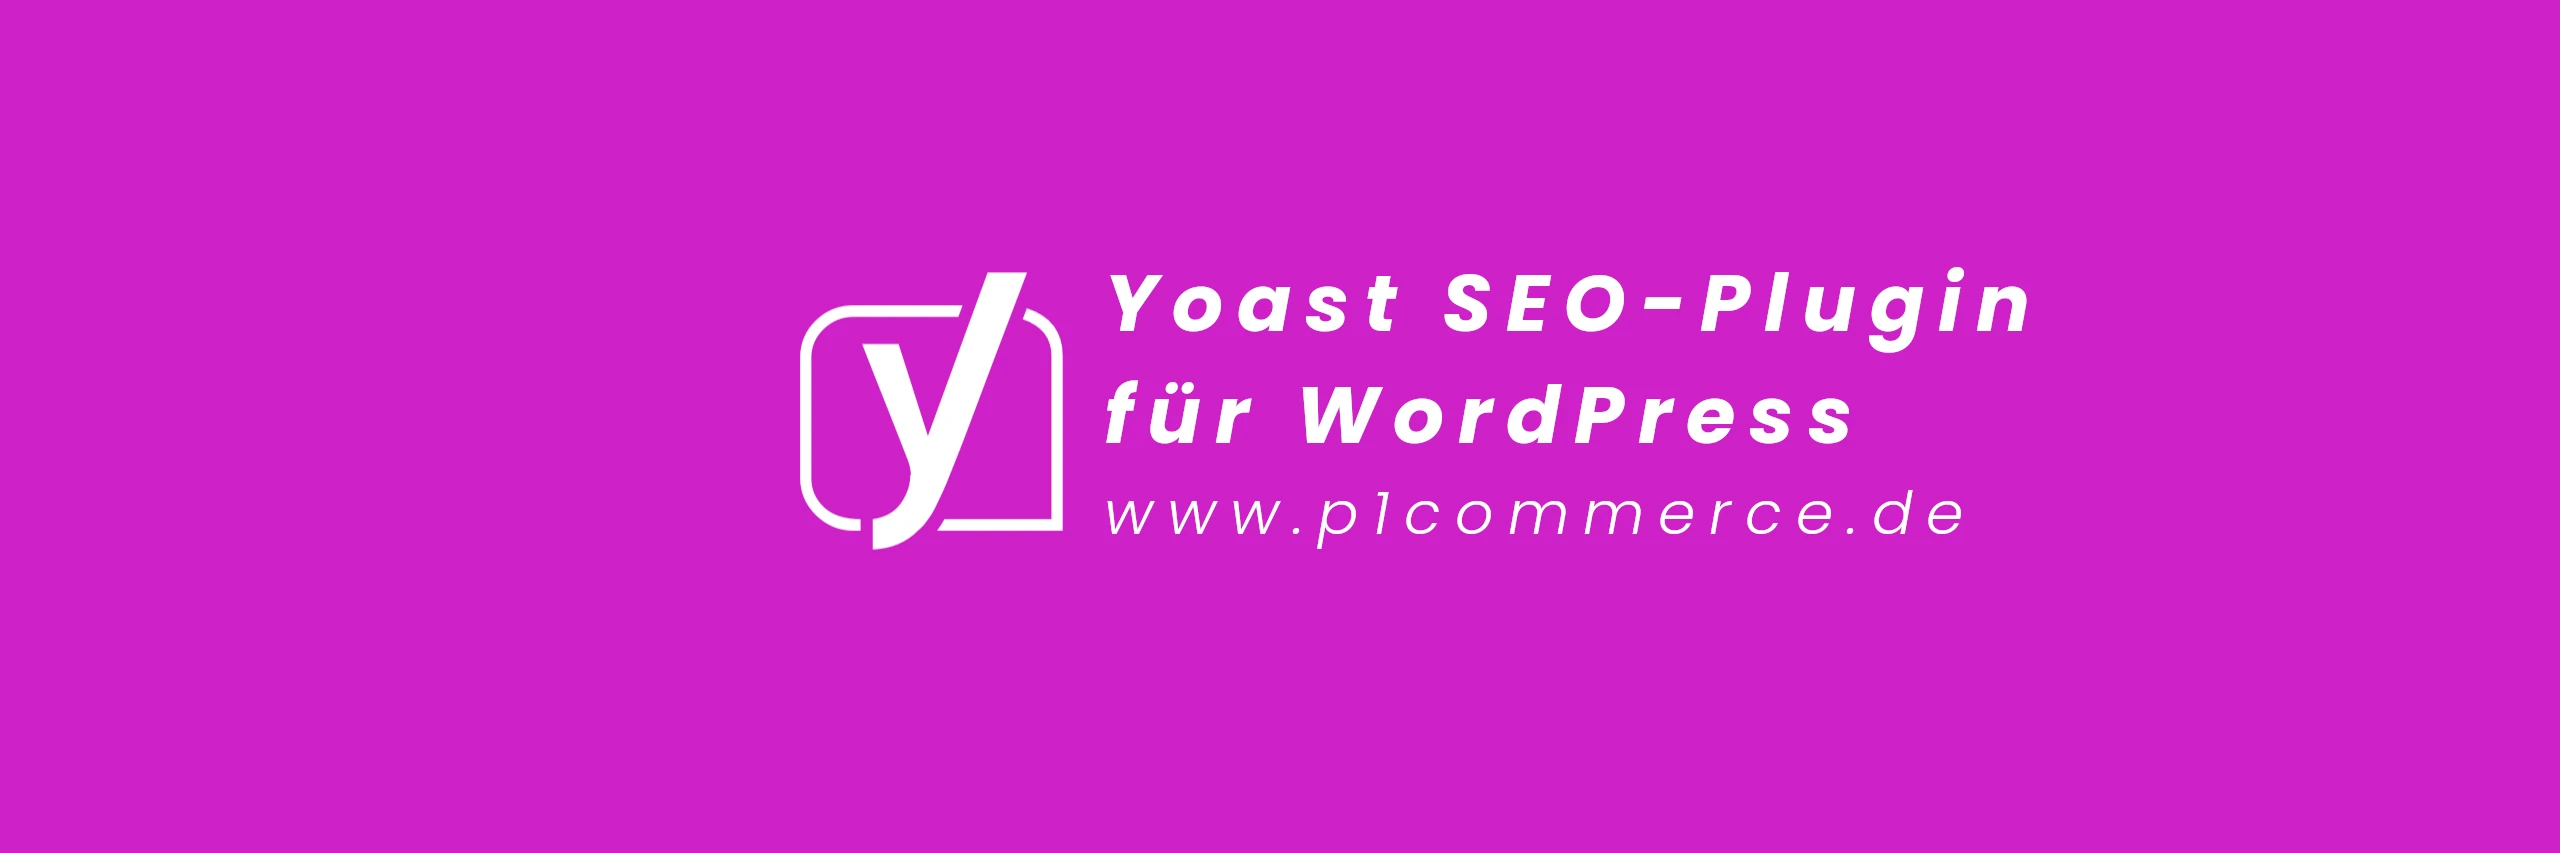 Ein umfassender Leitfaden zur Verwendung des Yoast SEO Plugins für WordPress